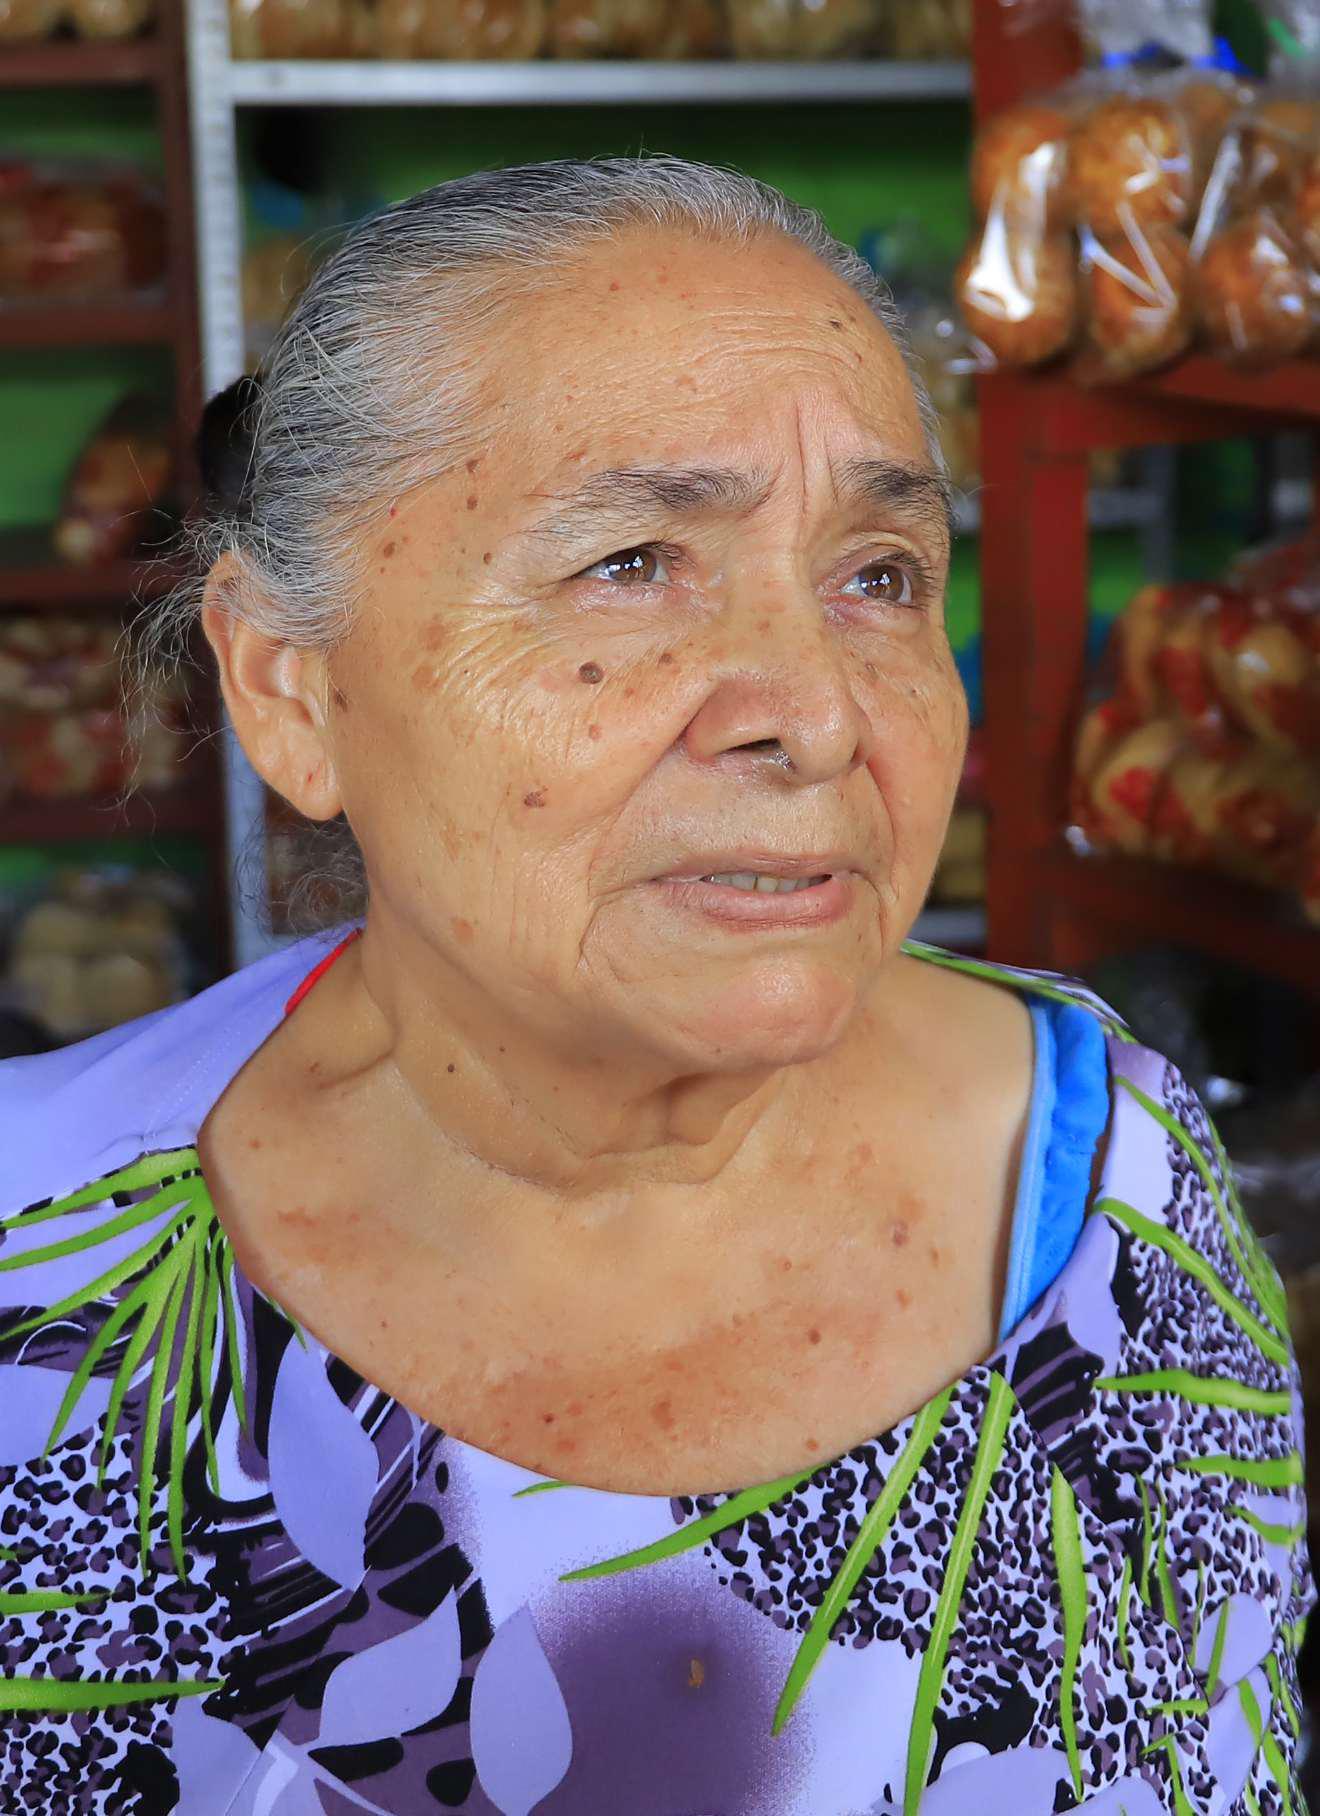 Panadería Sofía, seis años de llevar sabor a la Valle de Sula